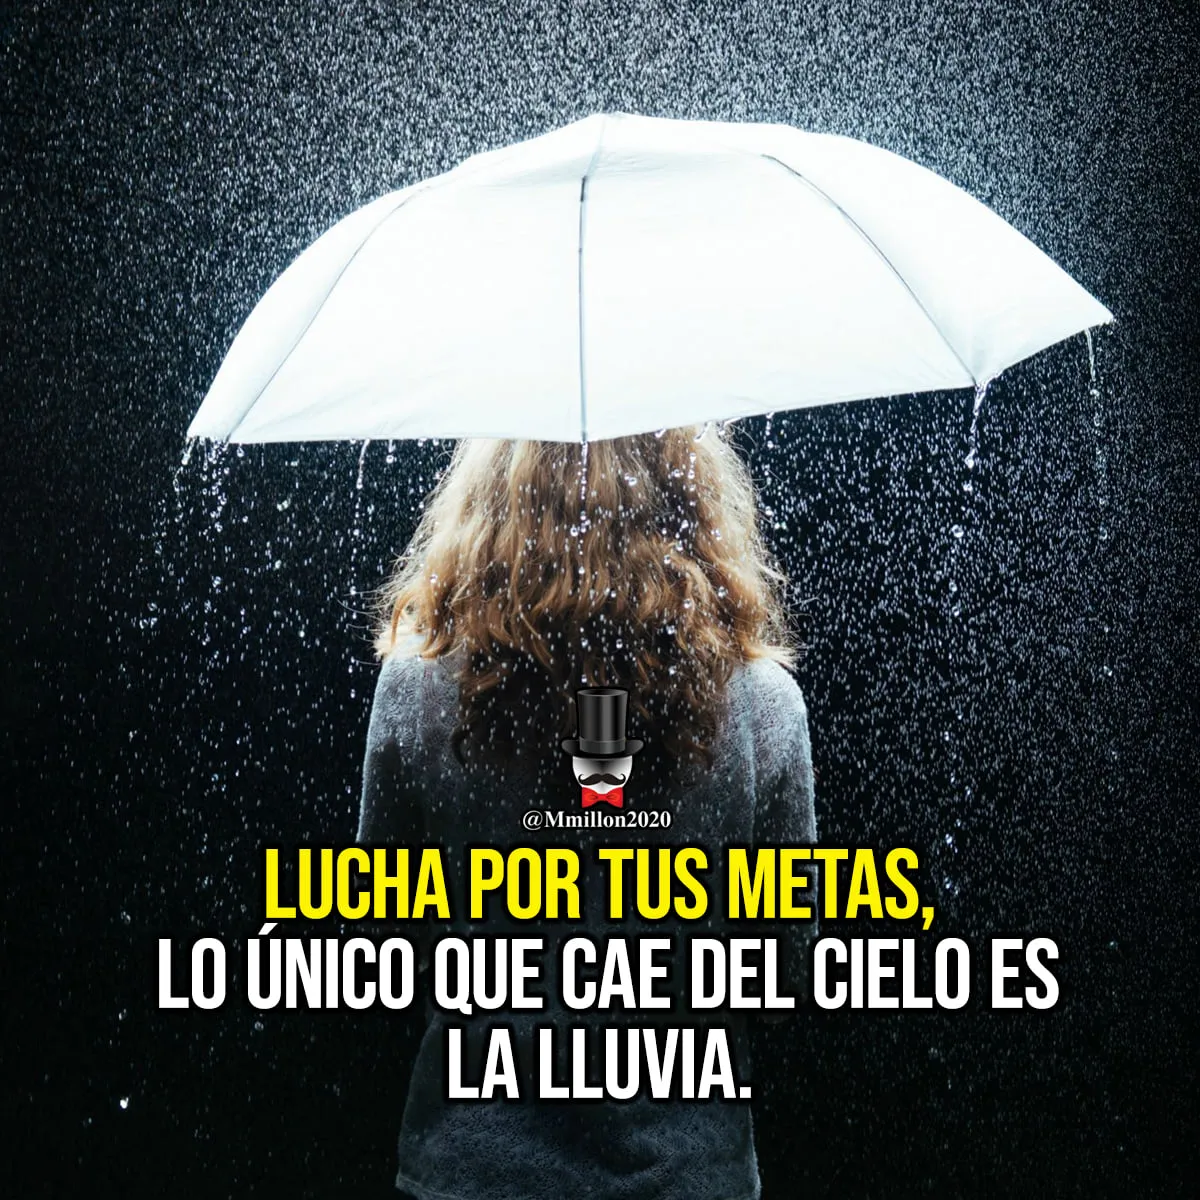 La imagen muestra a una mujer de espaldas sosteniendo un paraguas bajo la lluvia. La mujer lleva un vestido blanco y el paraguas es de color blanco roto. La lluvia cae con fuerza y la mujer parece estar empapada. La imagen es triste y melancólica.